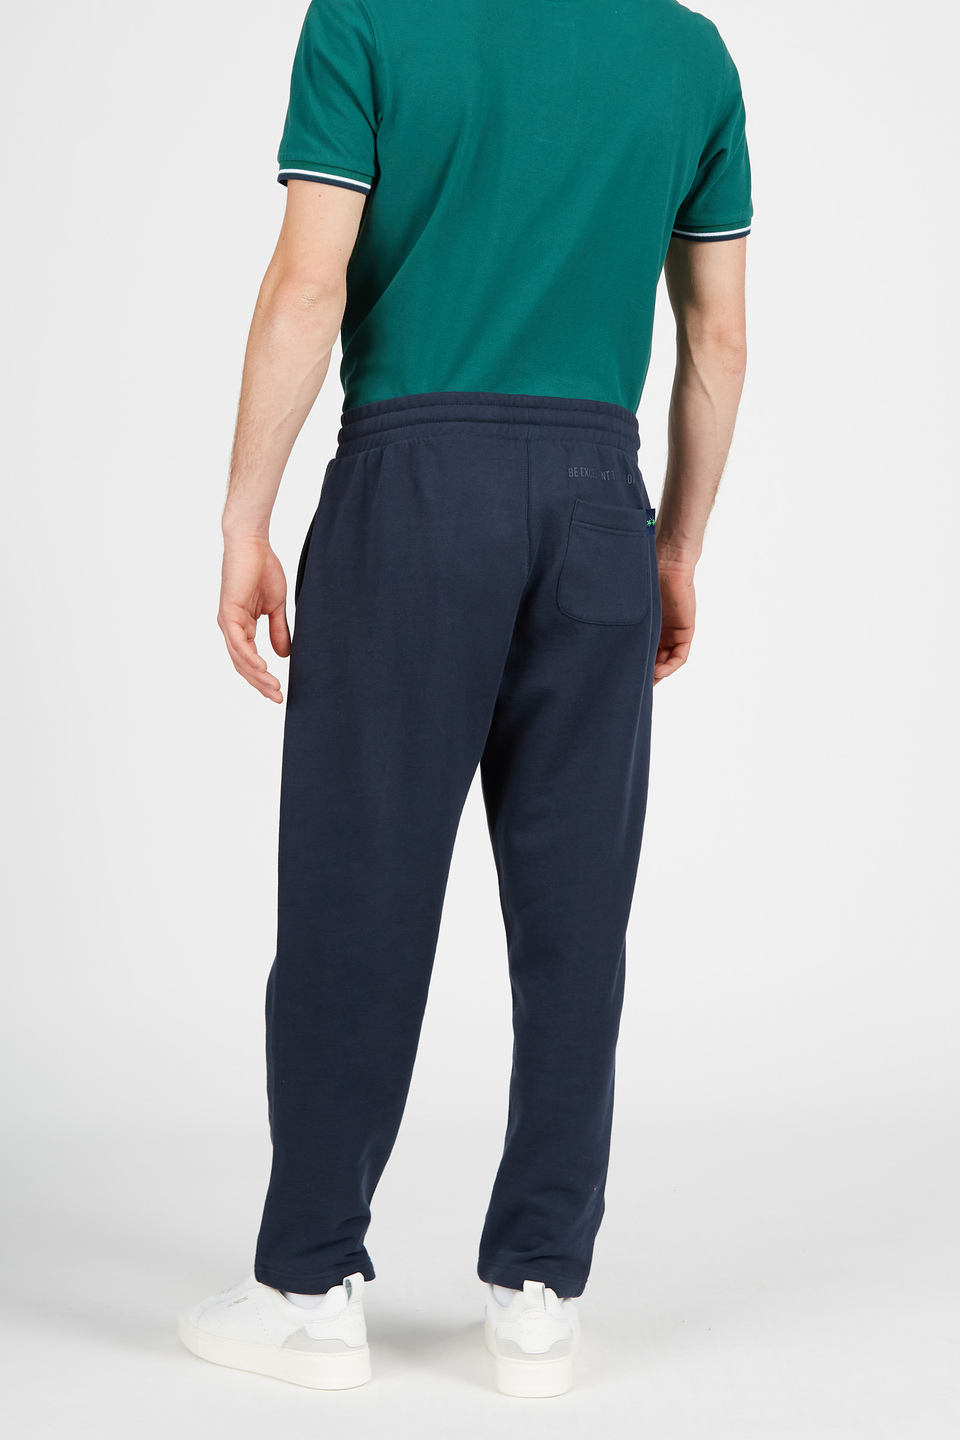 Pantalone da uomo in cotone modello jogger con coulisse | La Martina - Official Online Shop